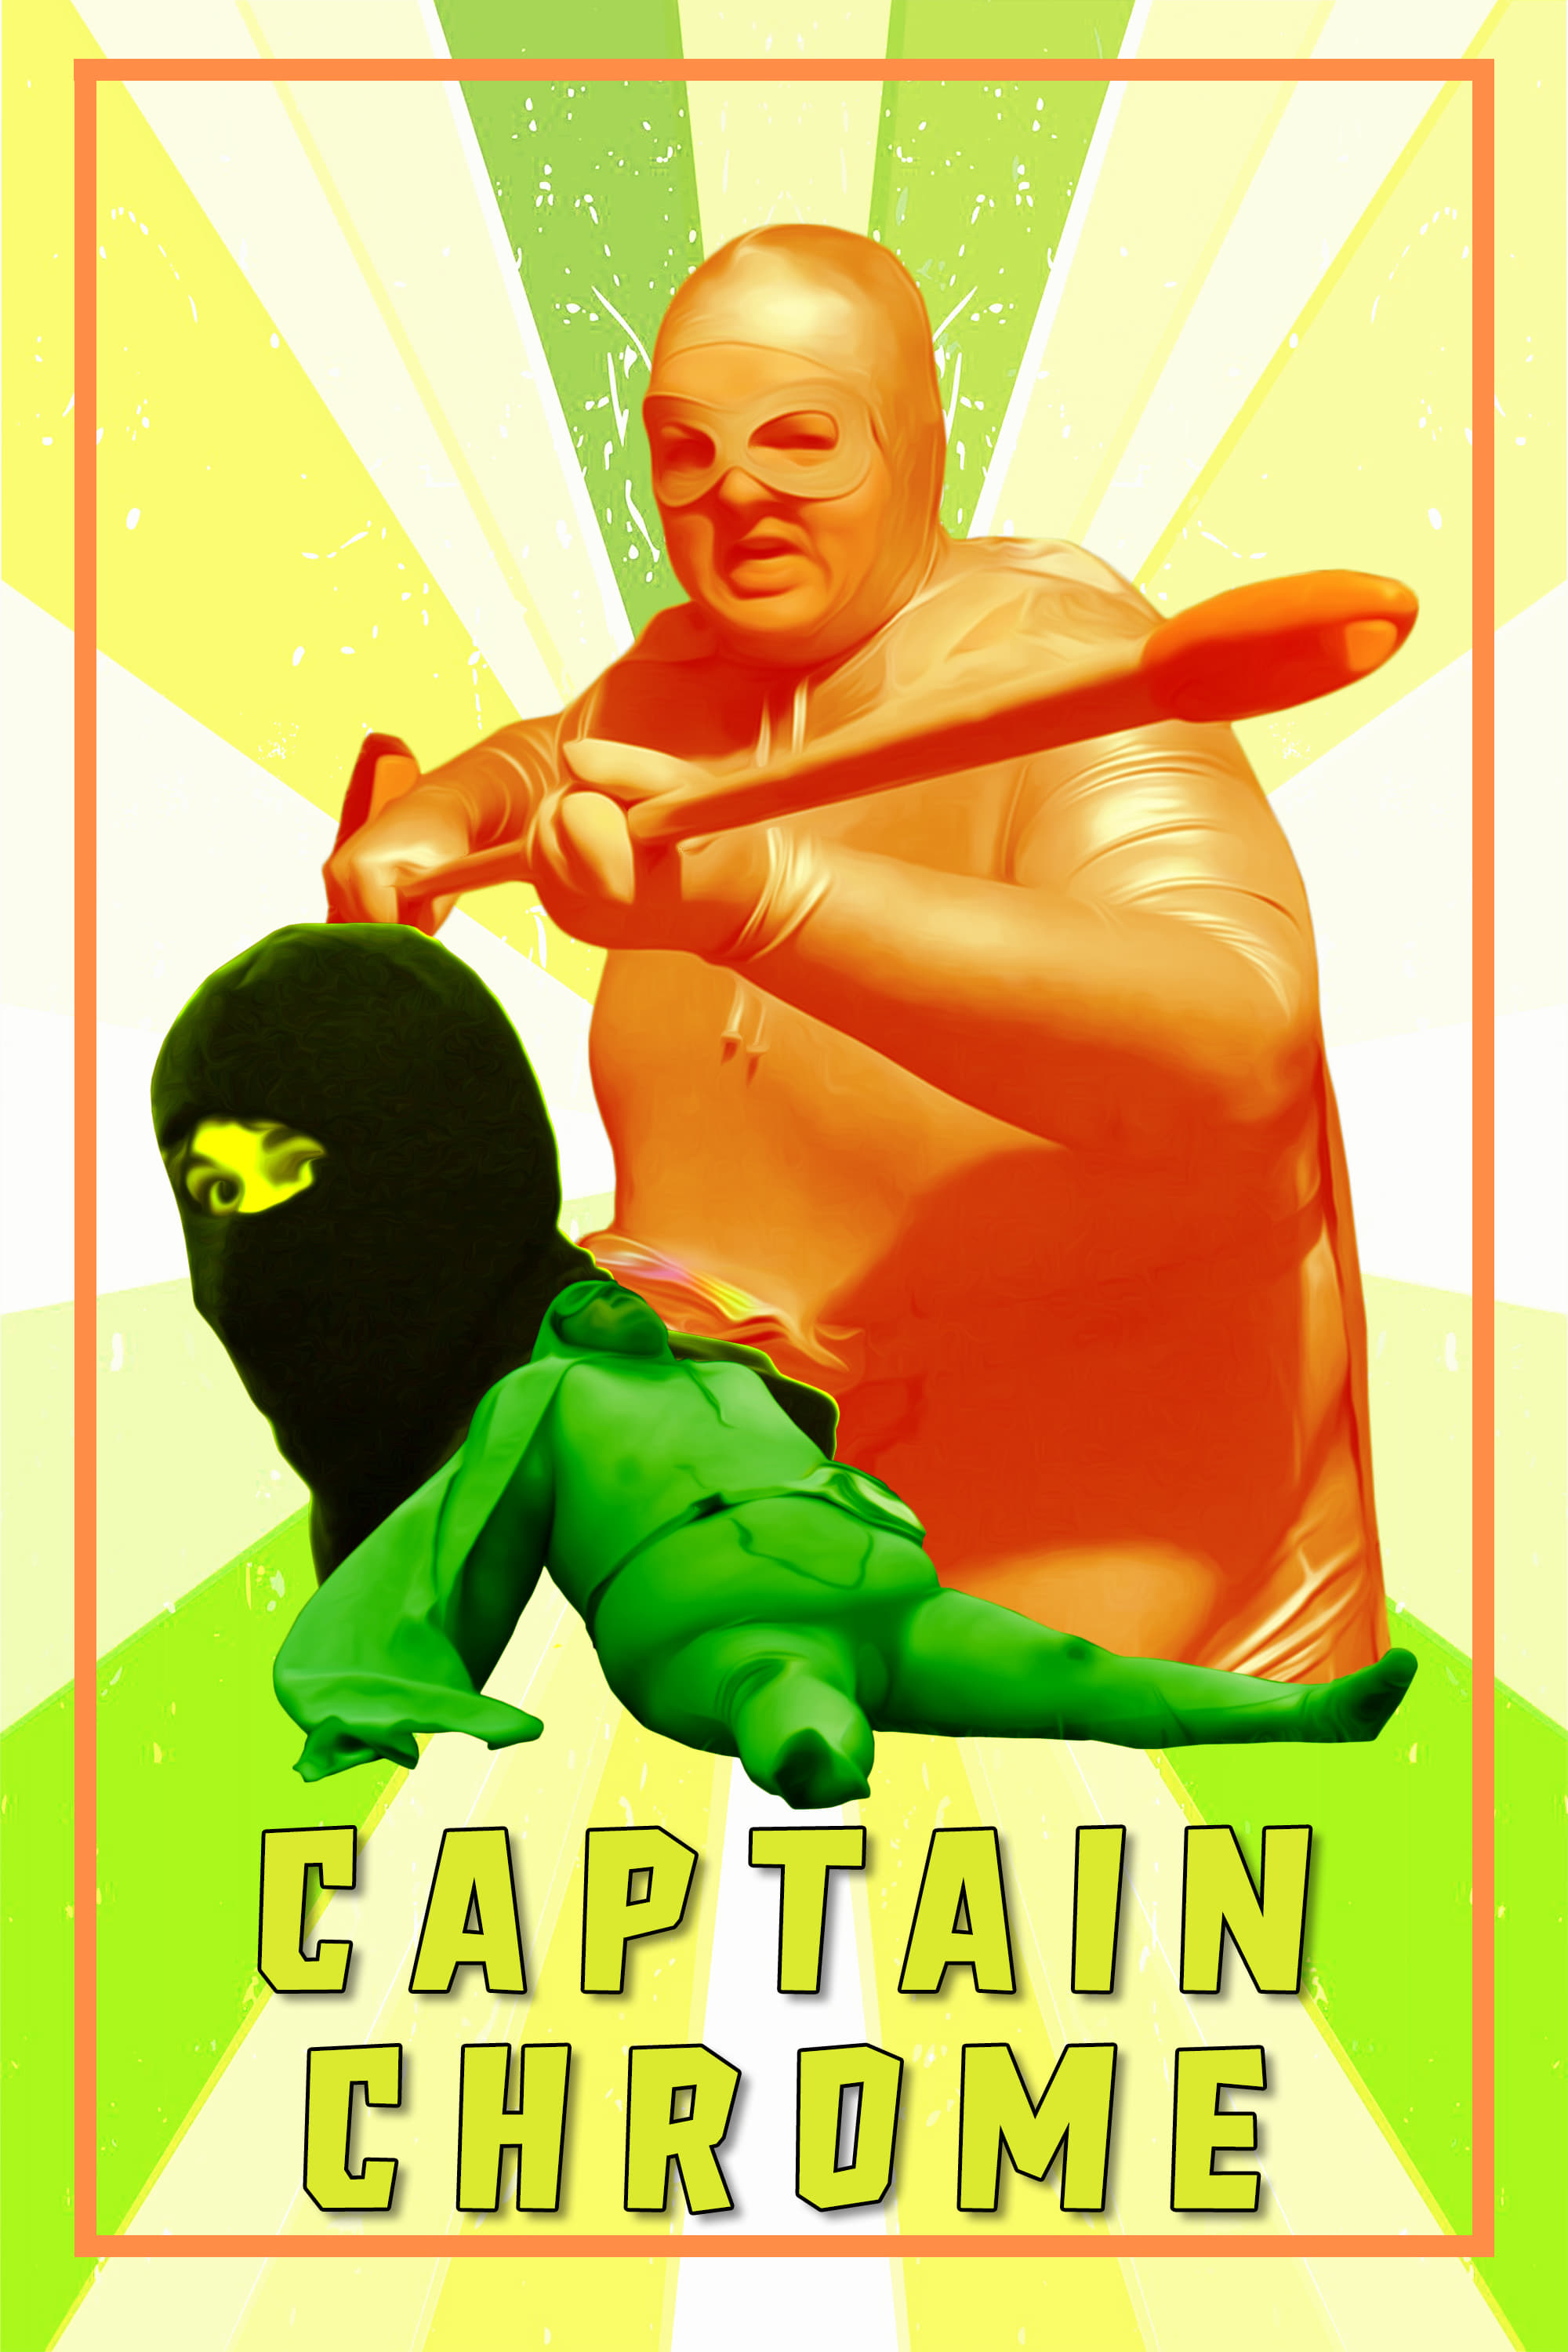 Captain Chrome